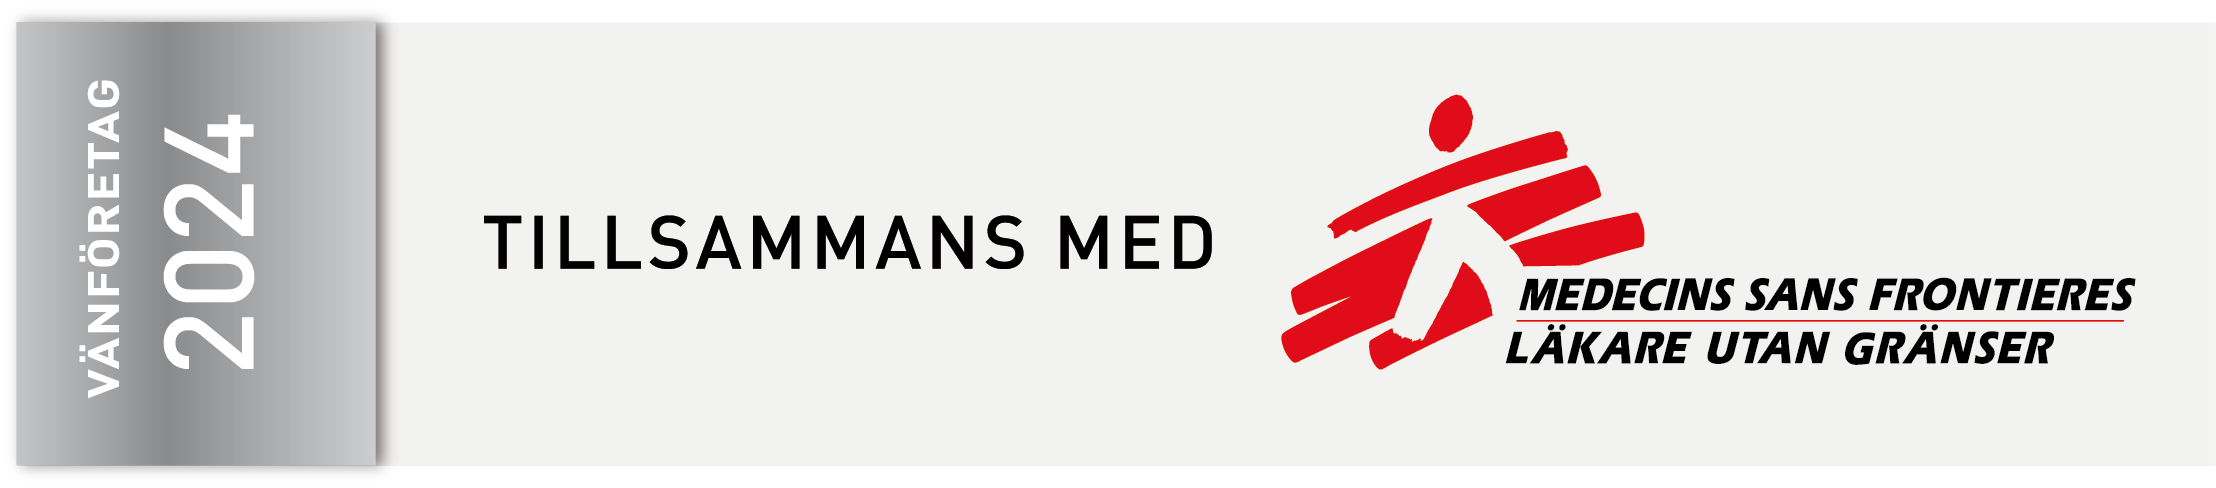 MSF Sweden - Field partner 2021